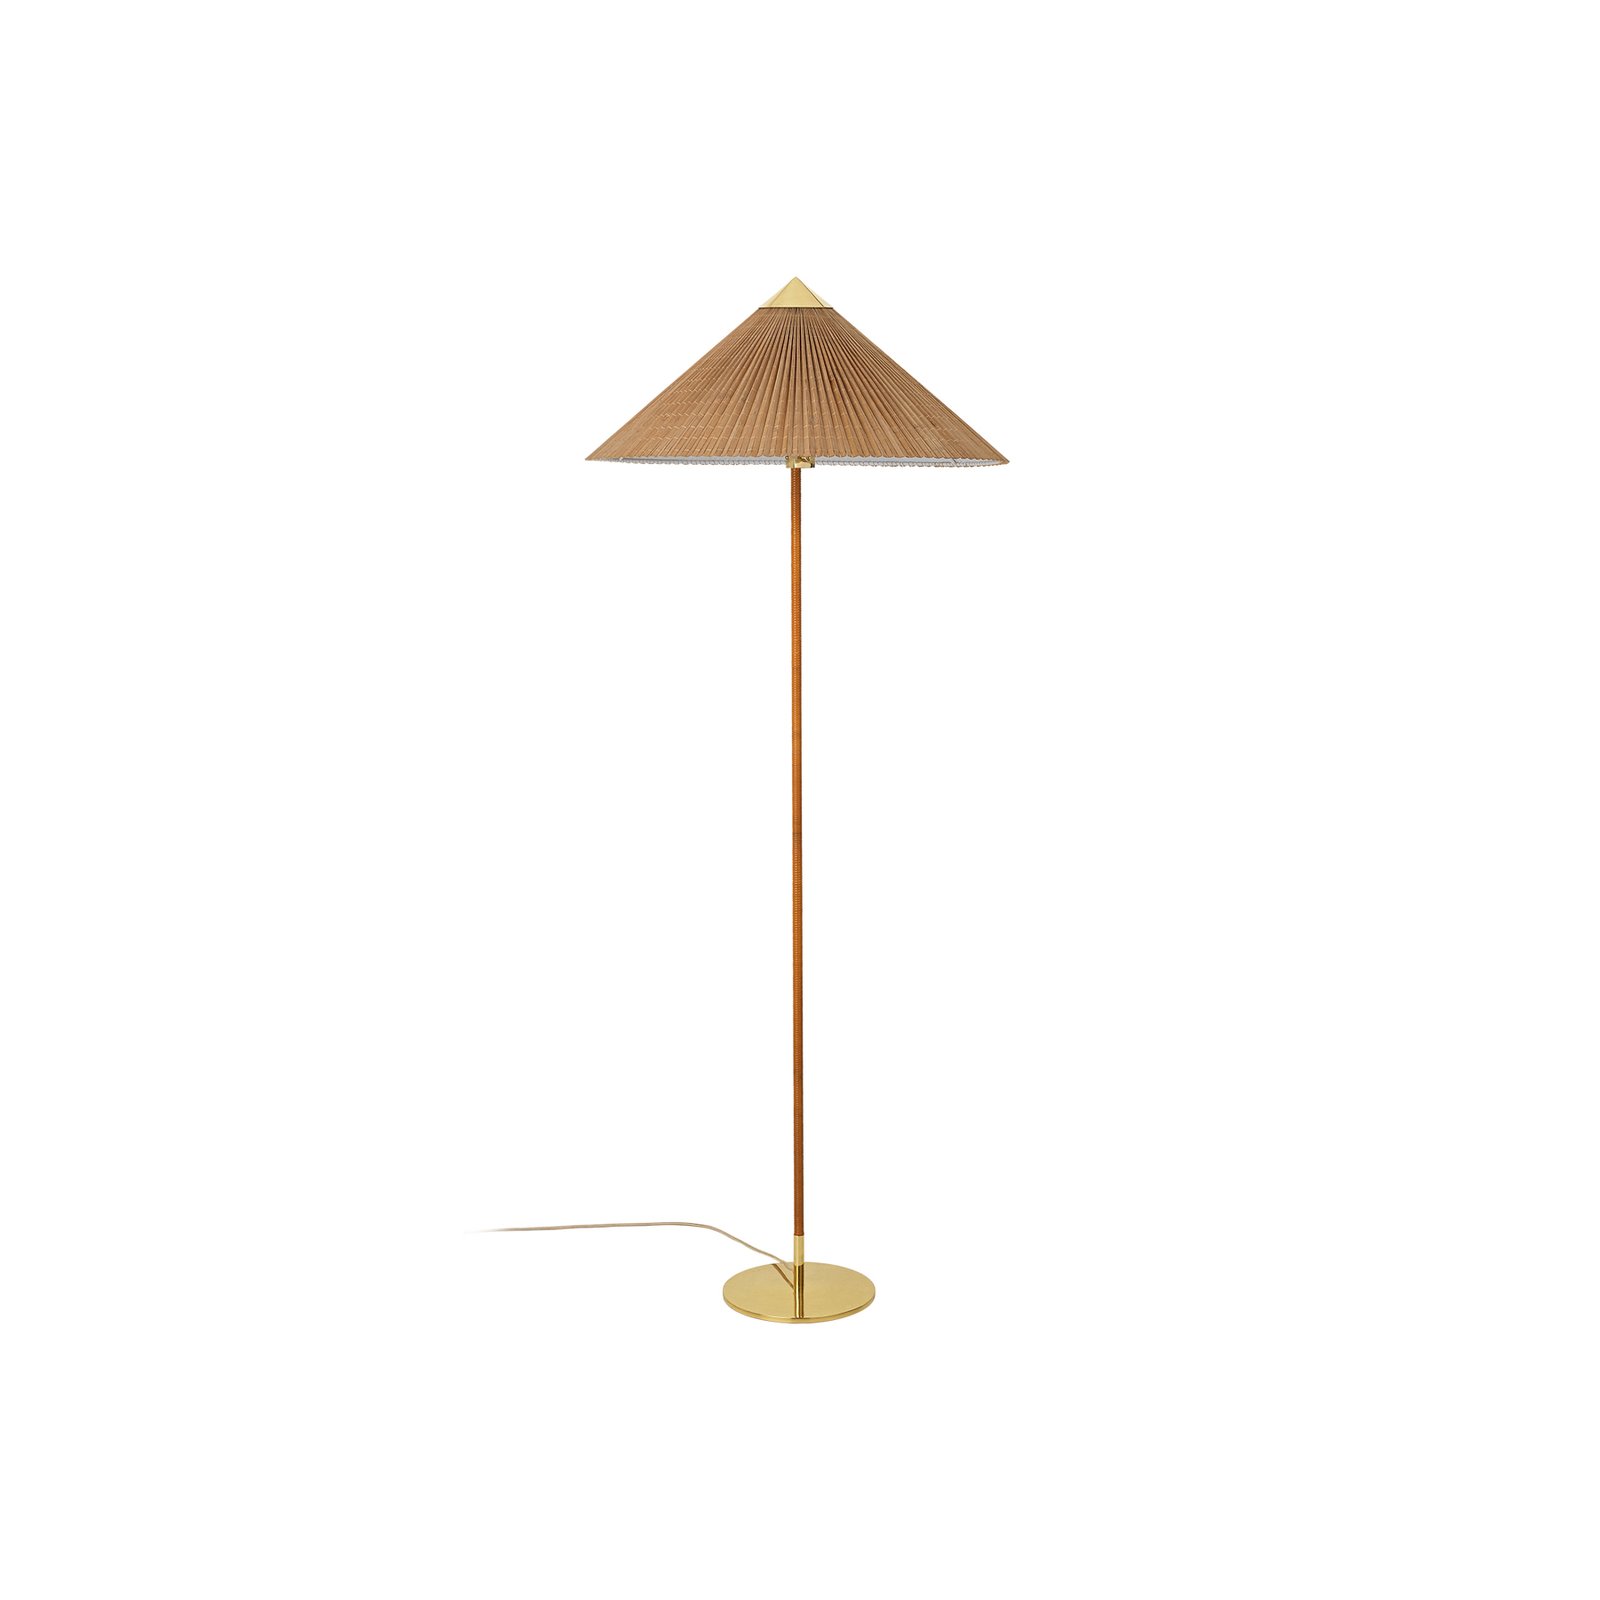 Lampa stojąca Gubi 9602, mosiądz/rattan, klosz bambusowy